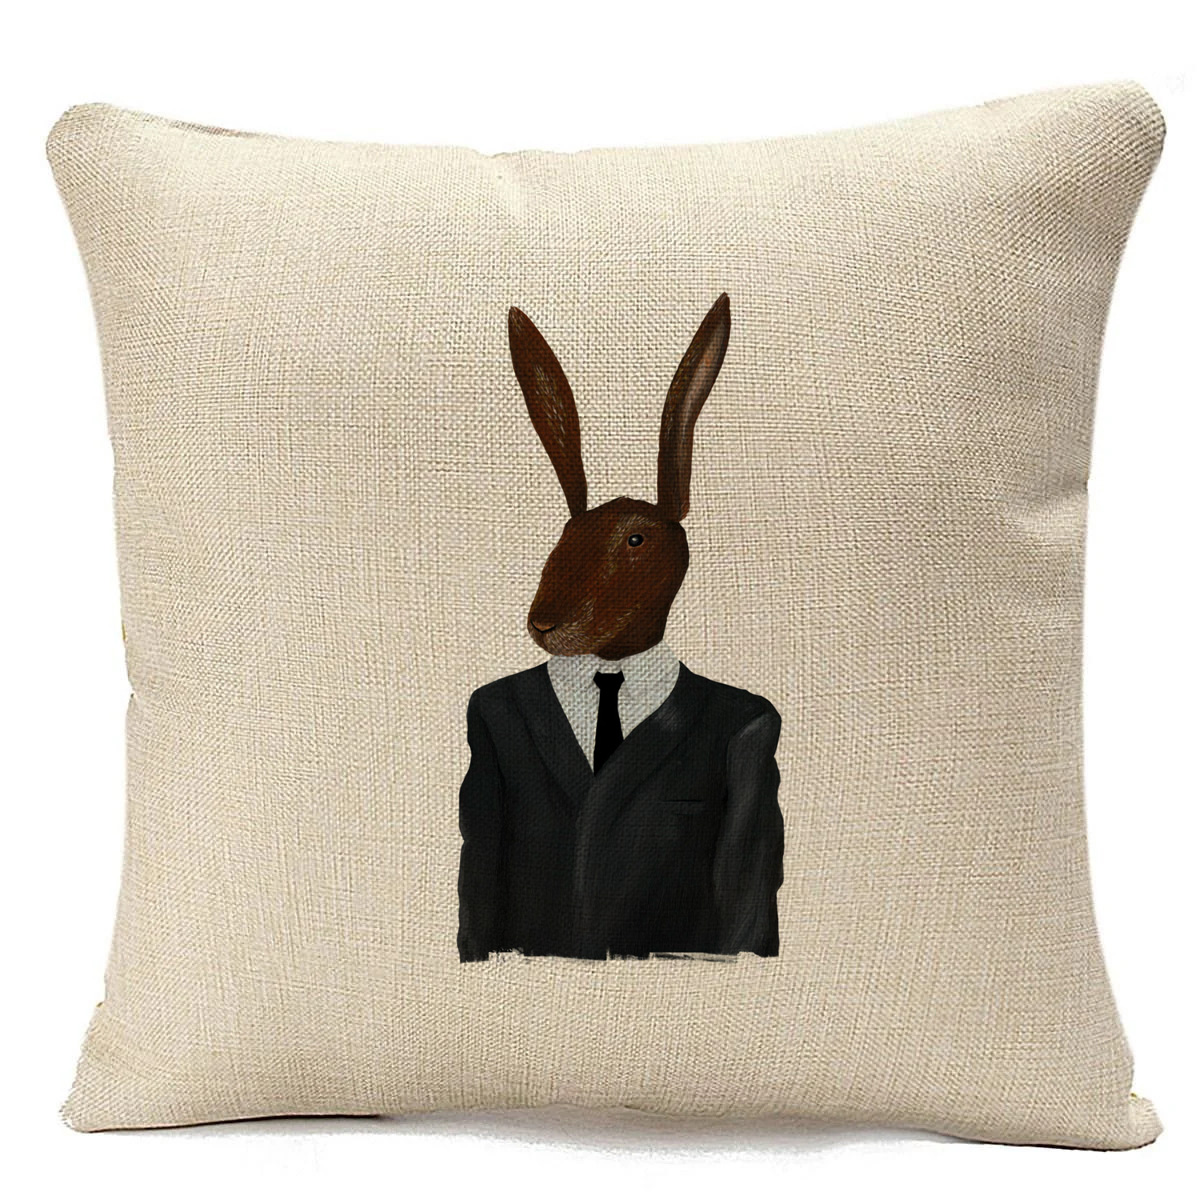 Бежевая подушка CoolPodarok с кроликом в галстуке.